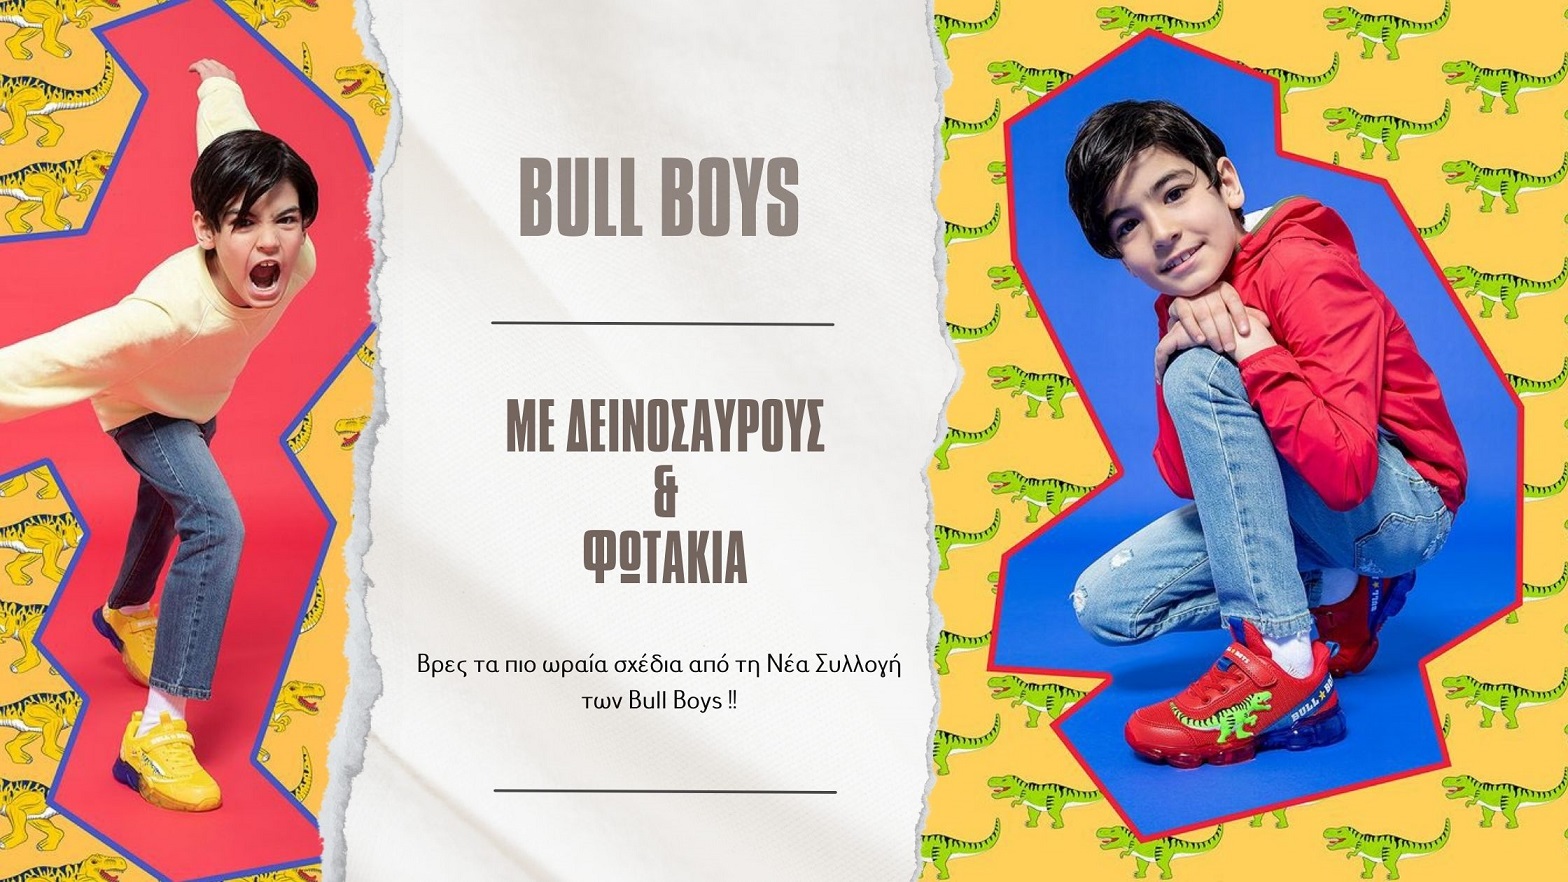 paidika-papoytsia-me-deinosayrous-kai-fotakia-bull-boys